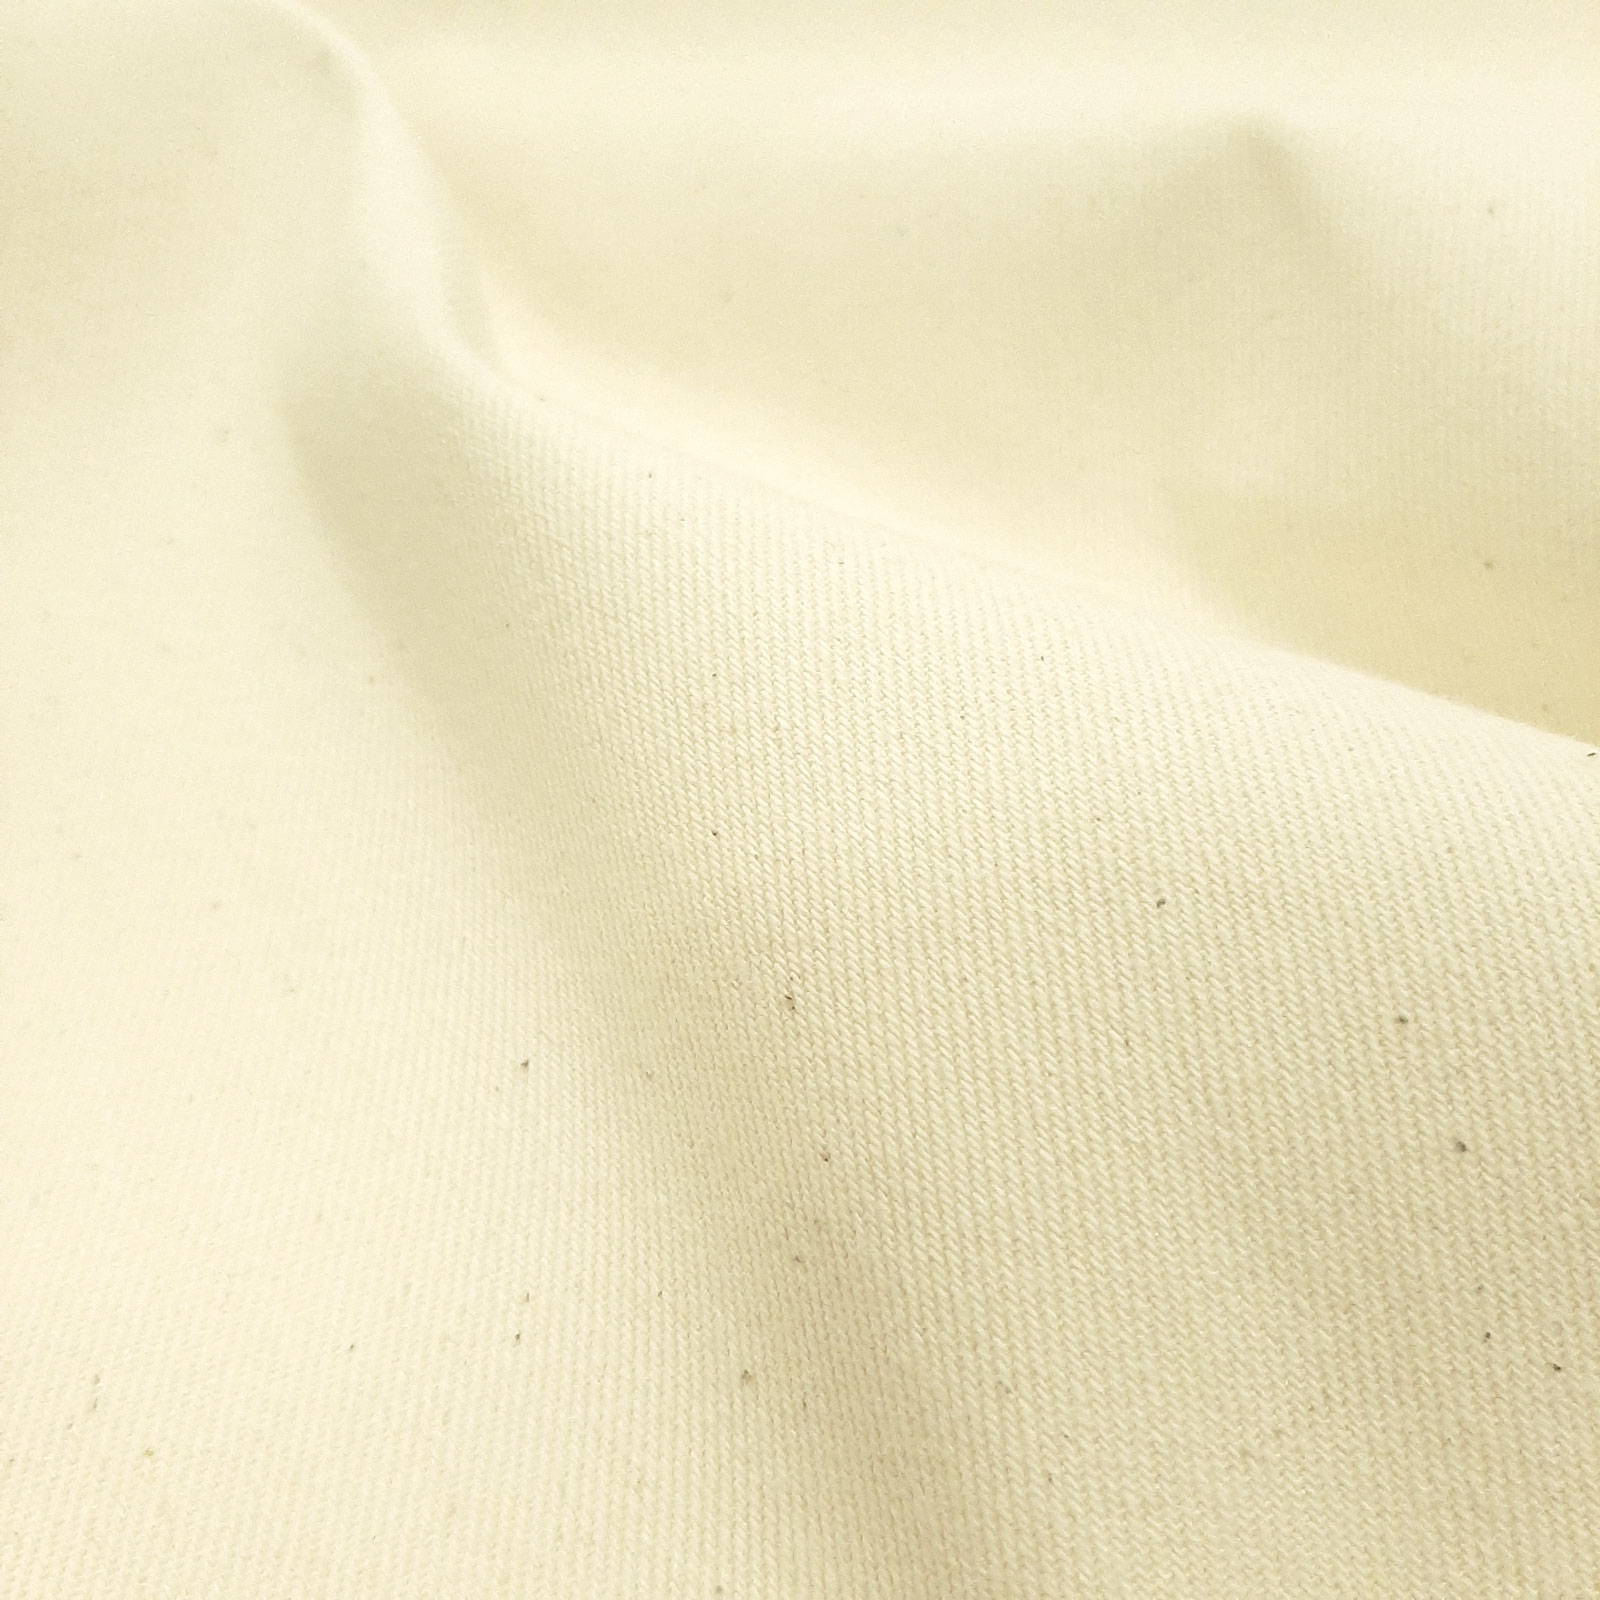 Nordkap Strong - natural cotton fabric